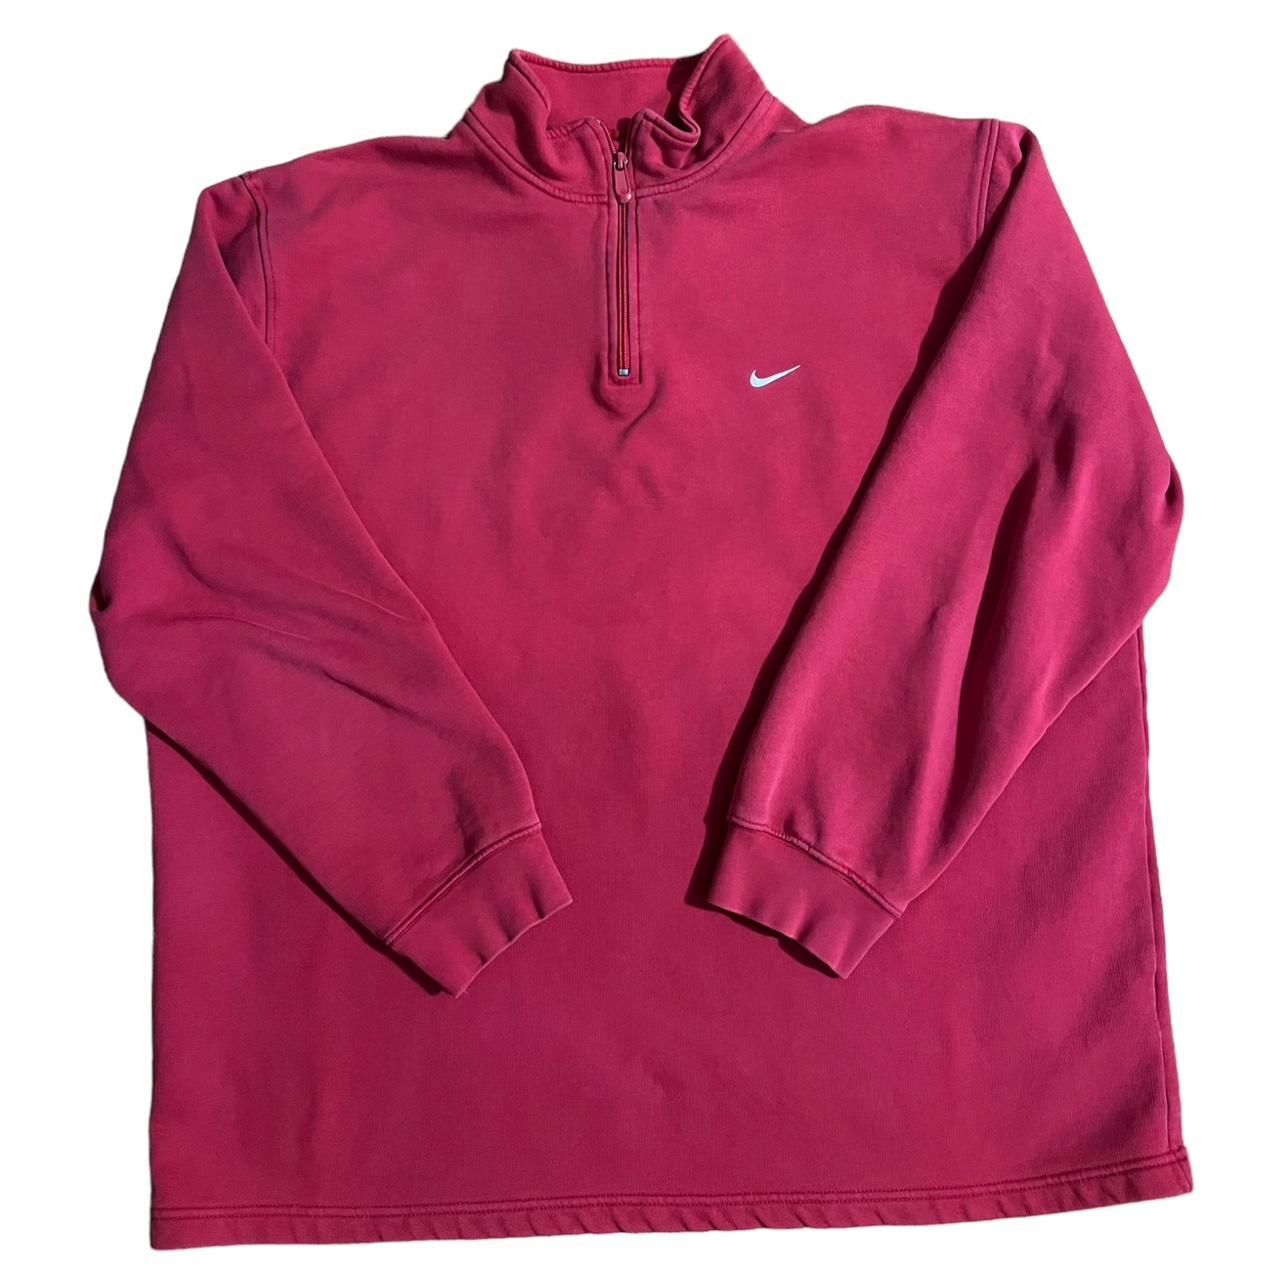 Vintage 90s to early 00s Full zip Nike hoodie. Sick